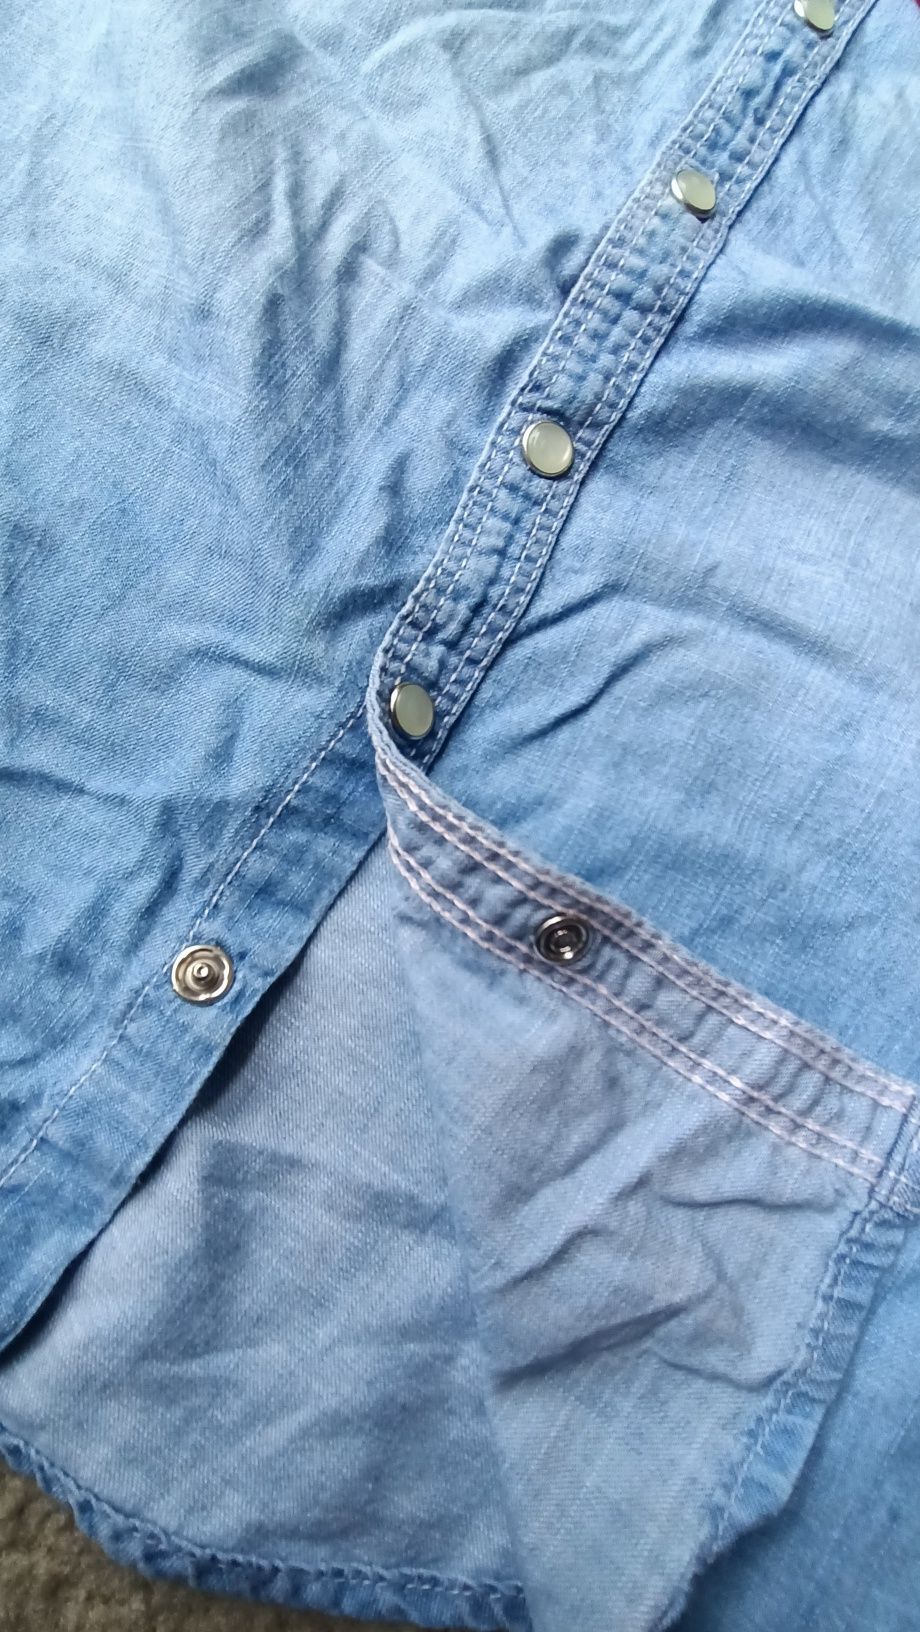 Jasniebieska koszula Ala jeans zapinana na zatrzaski H&M rozm 146